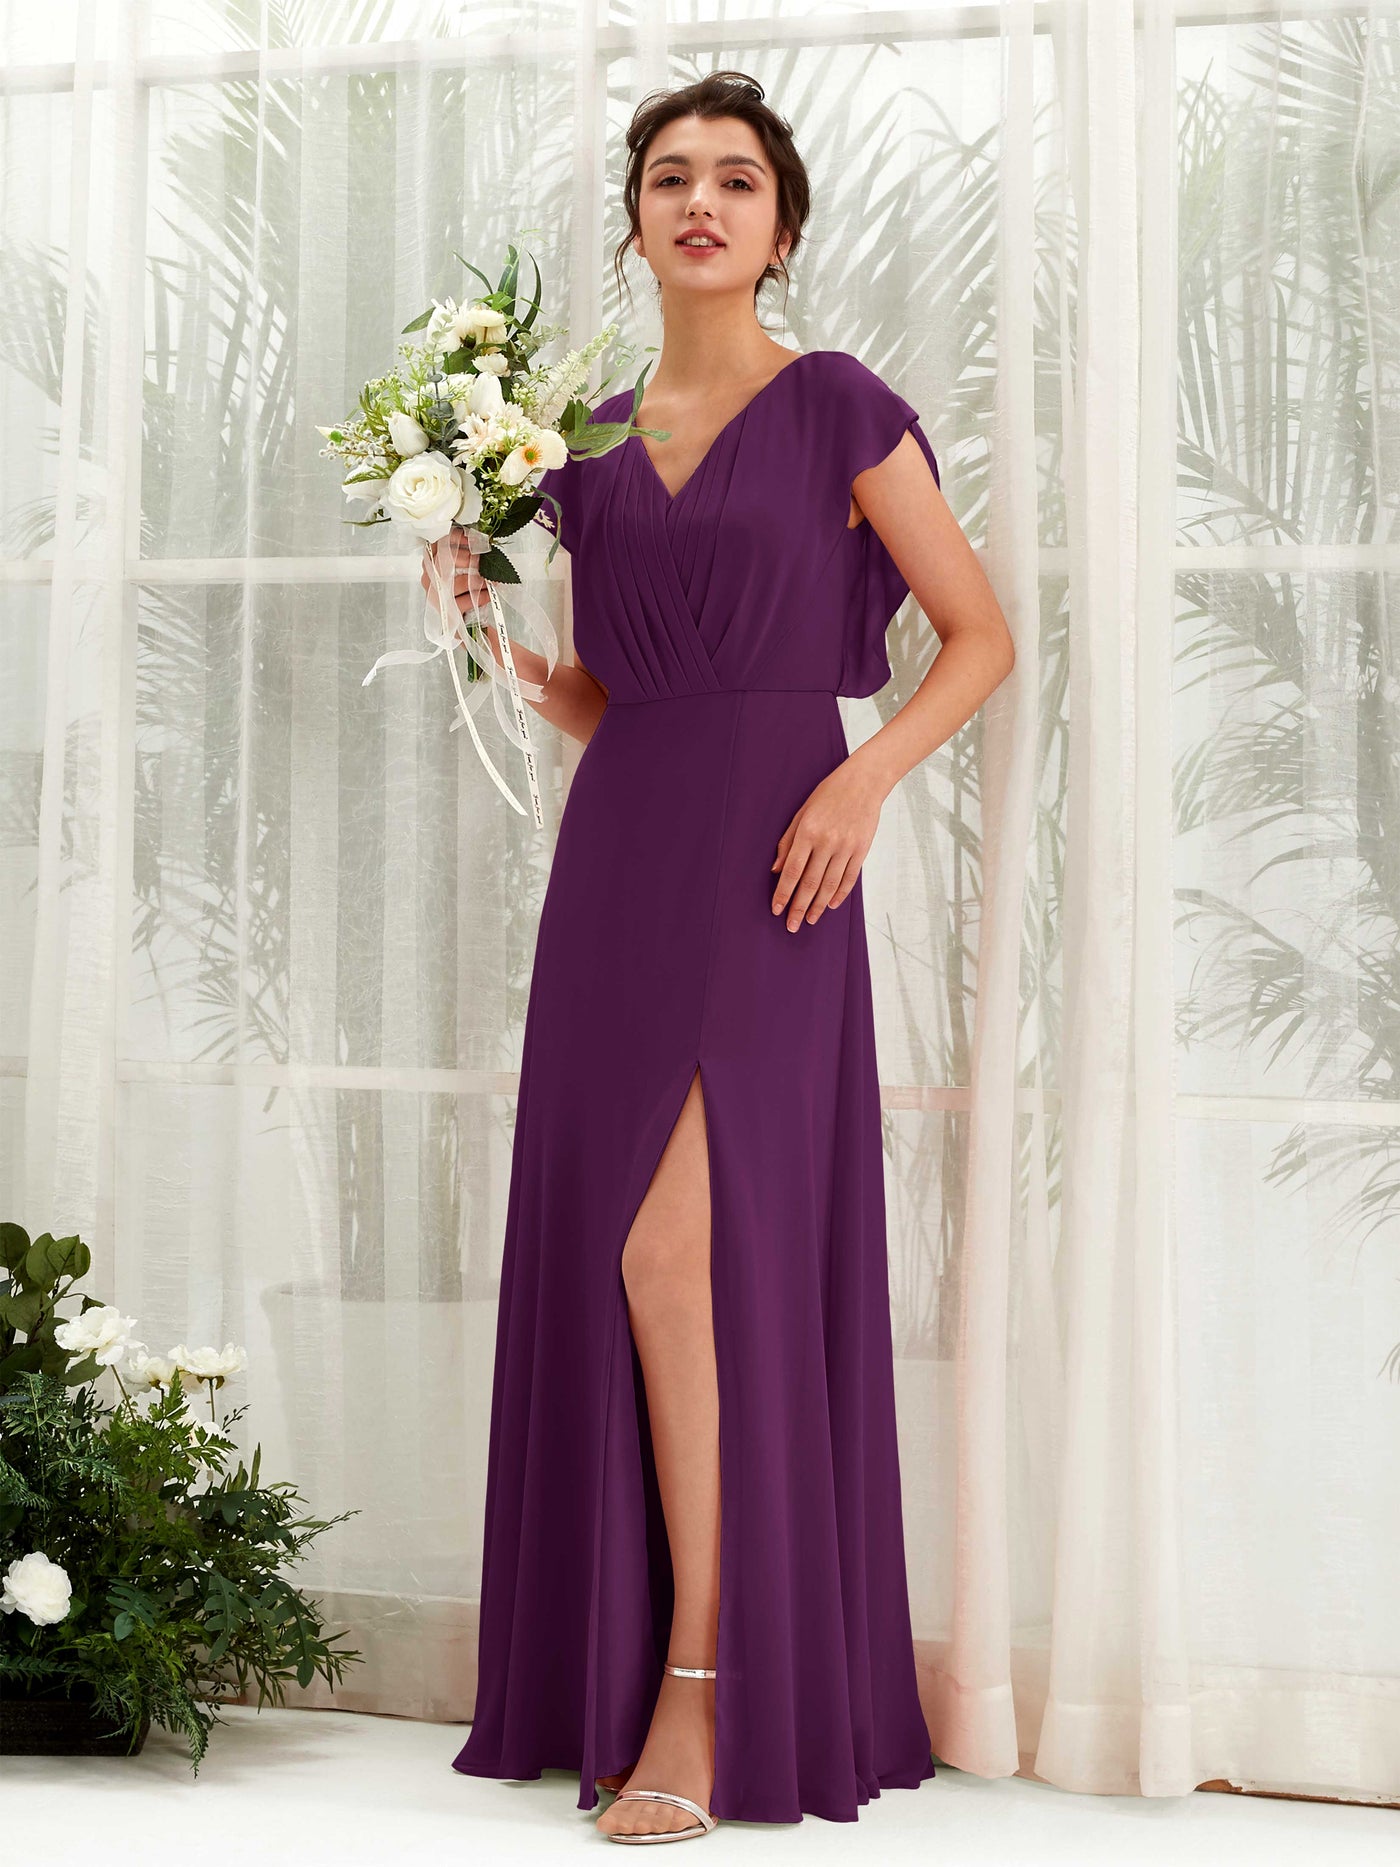 V-neck Cap Sleeves Bridesmaid Dress - Grape (81225631)#color_grape